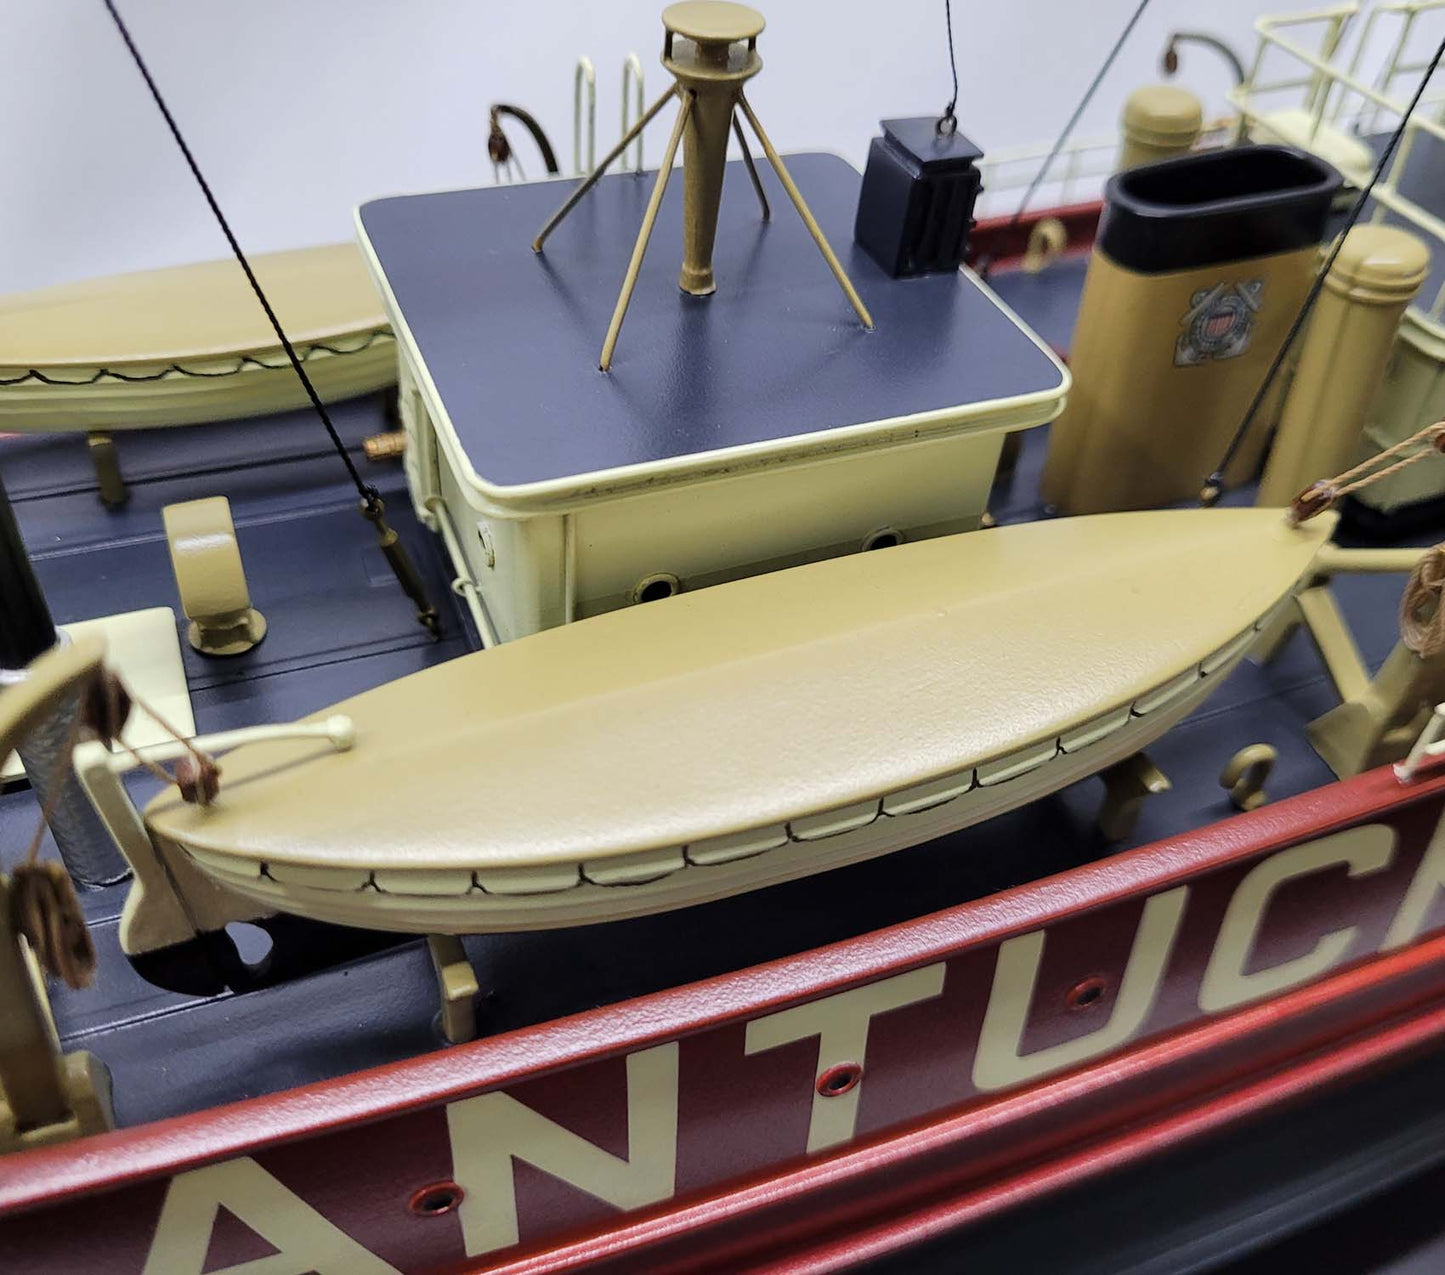 Nantucket Lightship Model LV-112 - Gray - Lannan Gallery